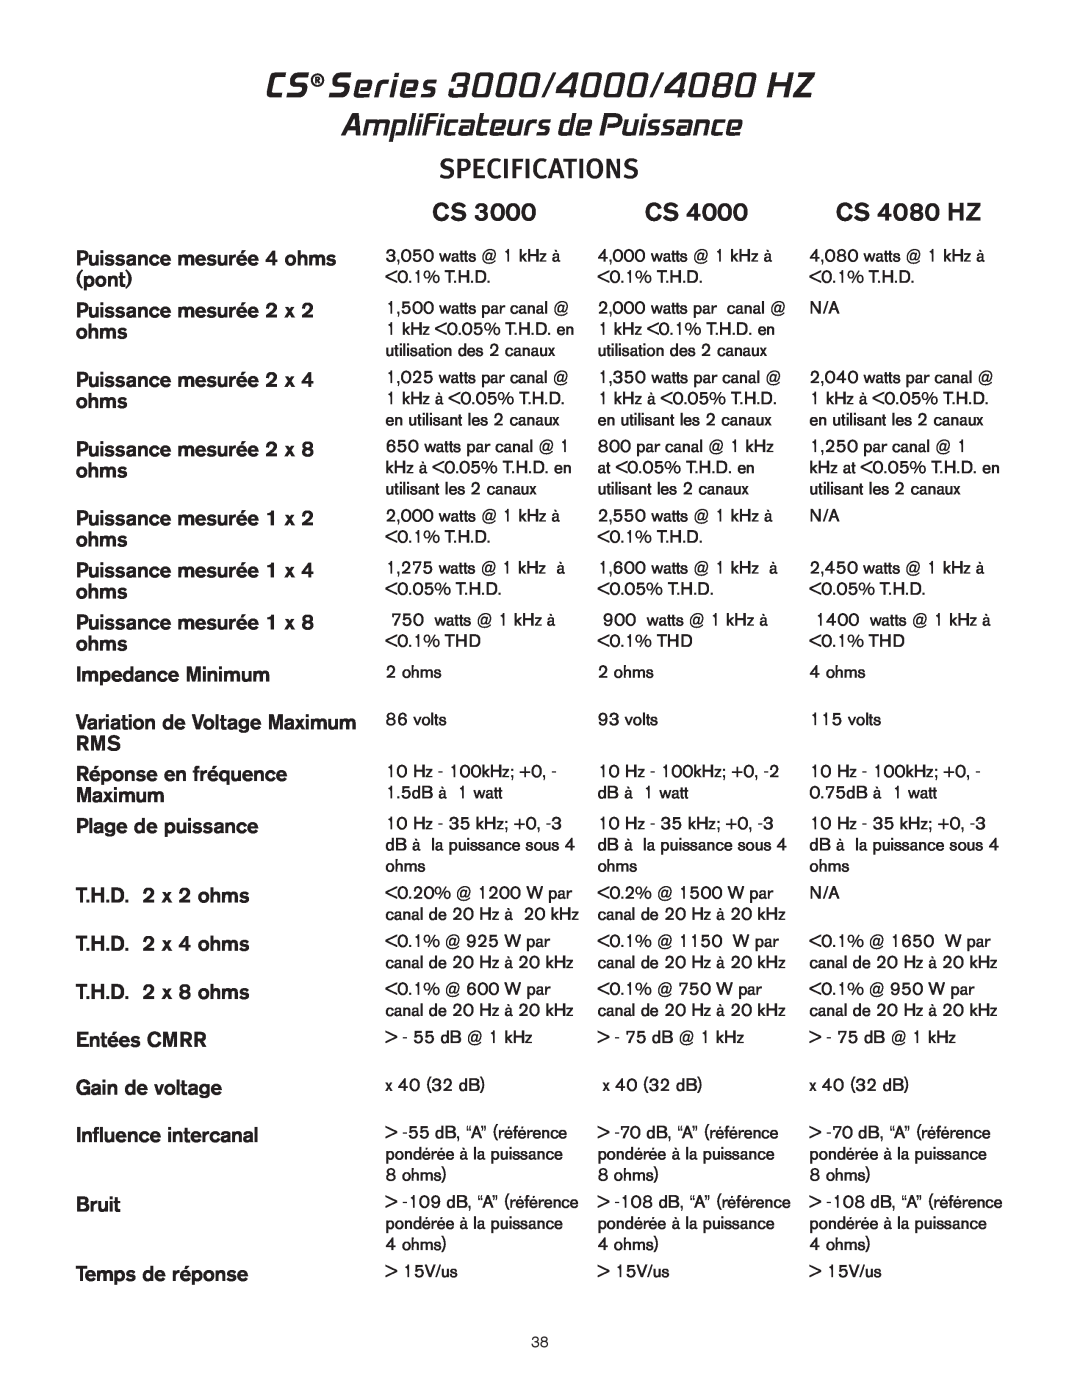 Peavey CS 4000 owner manual Amplificateurs de Puissance, CS Series 3000/4000/4080 HZ, Specifications, CS 4080 HZ 